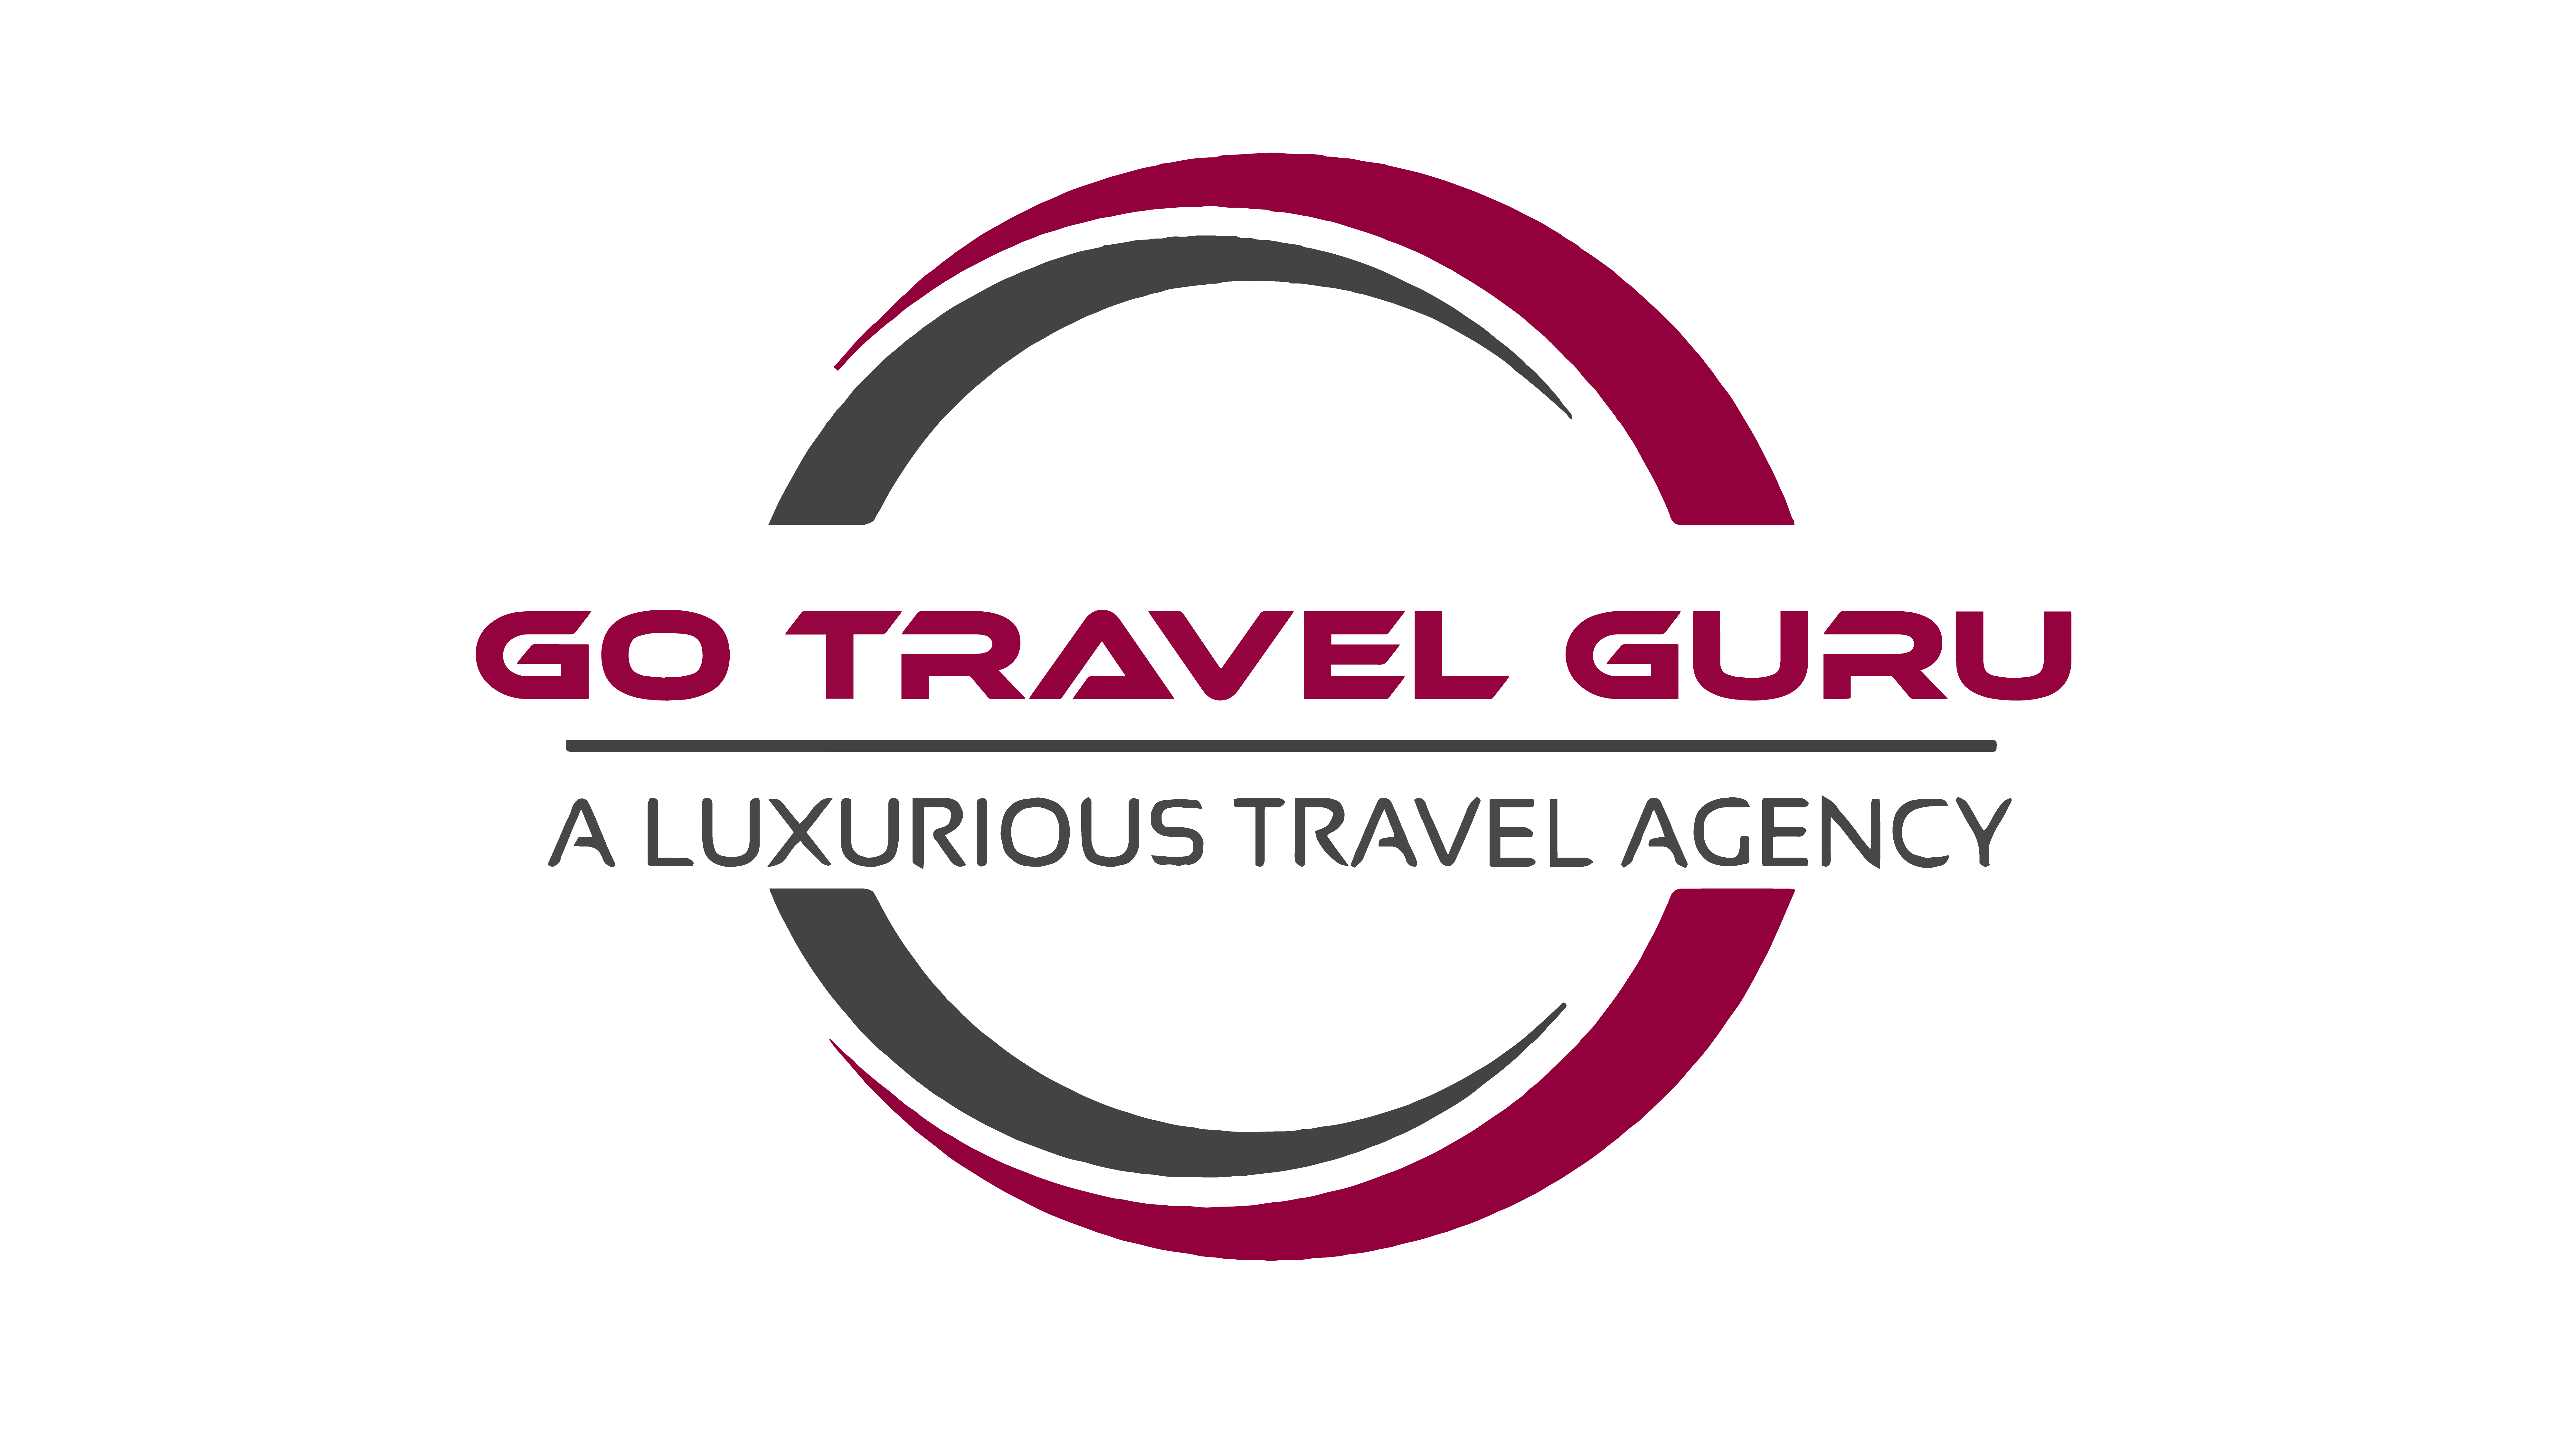 owner of travel guru